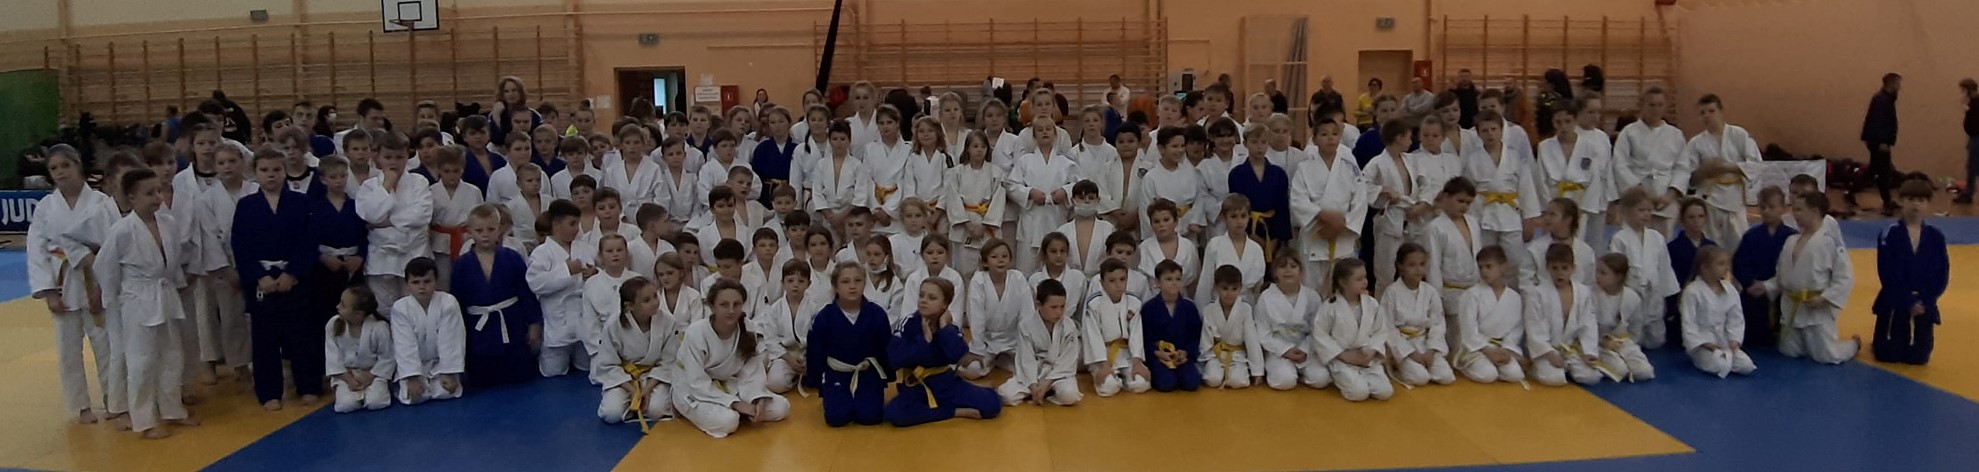 14 medali bochnian na 23 Mikołajkowym Turnieju Judo w Kielcach